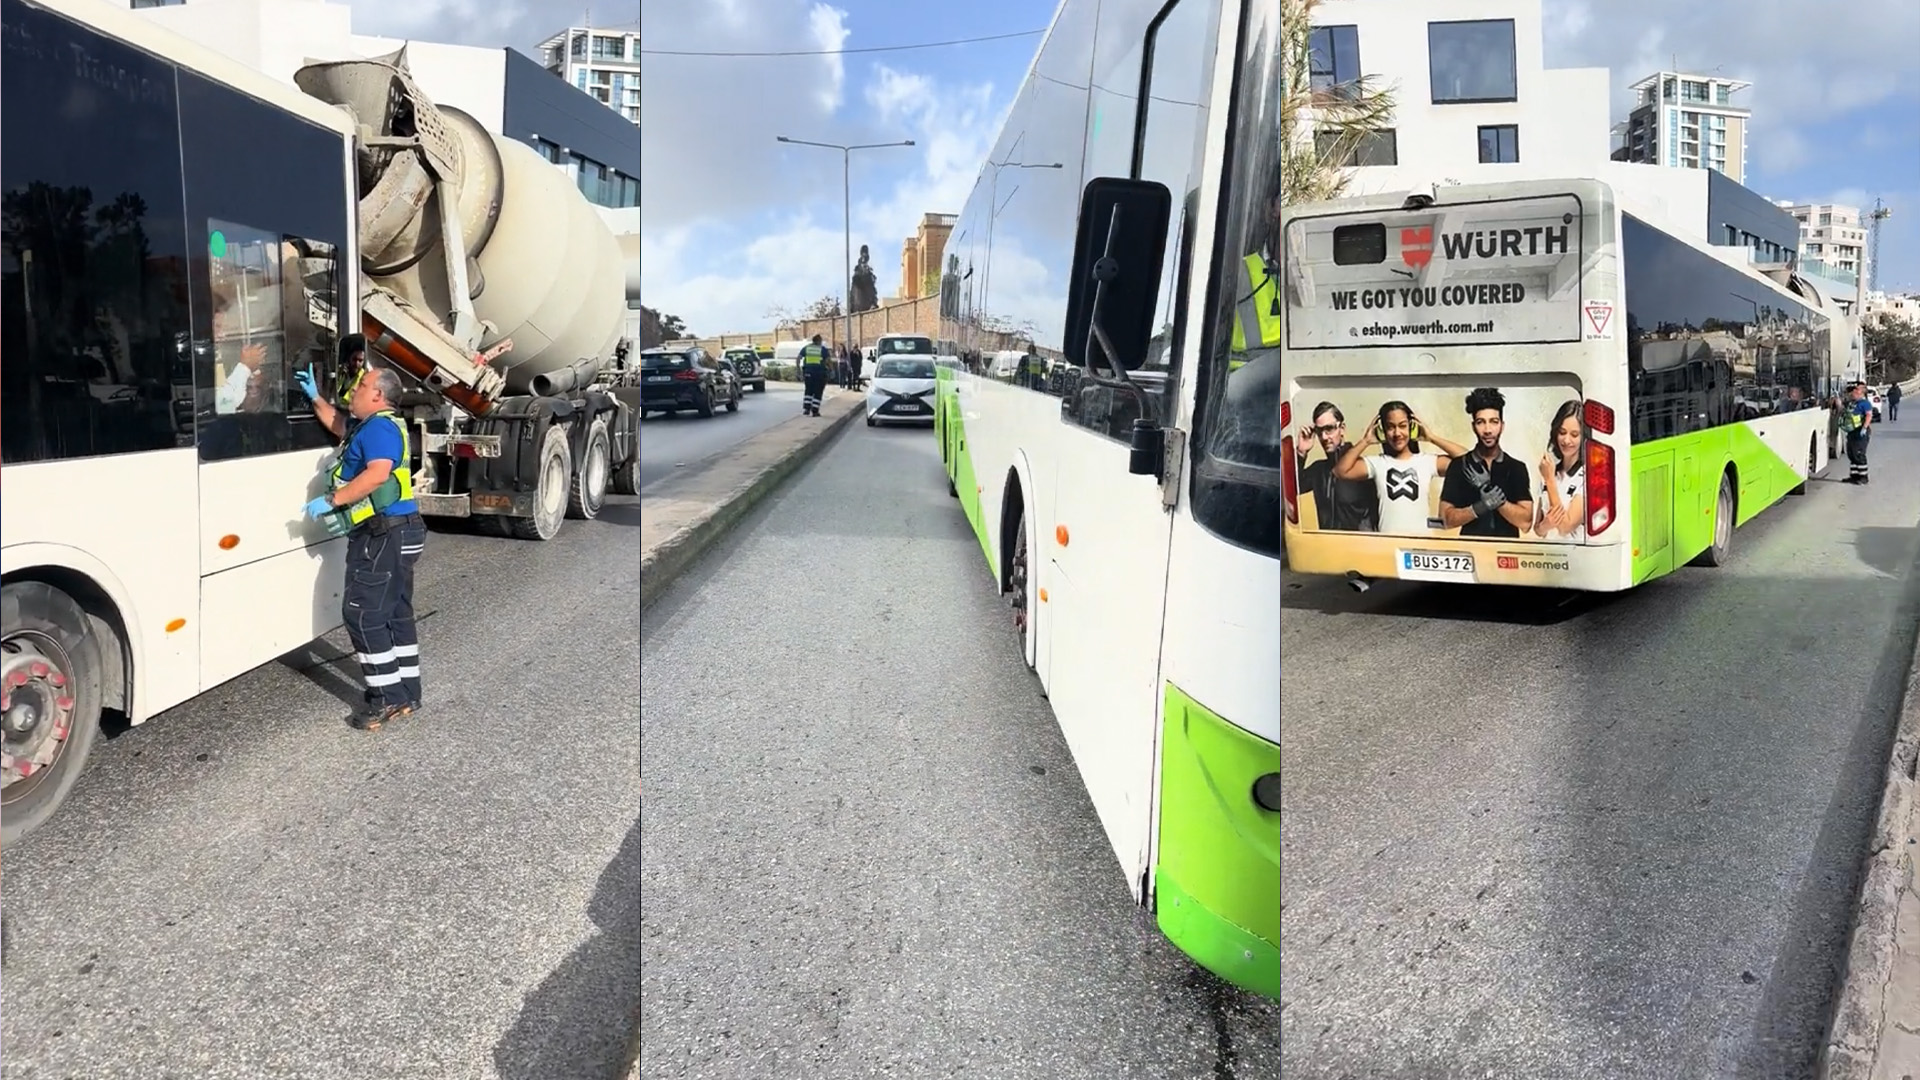 Chaos in St. Julian's As Bus Blocks Ambulance